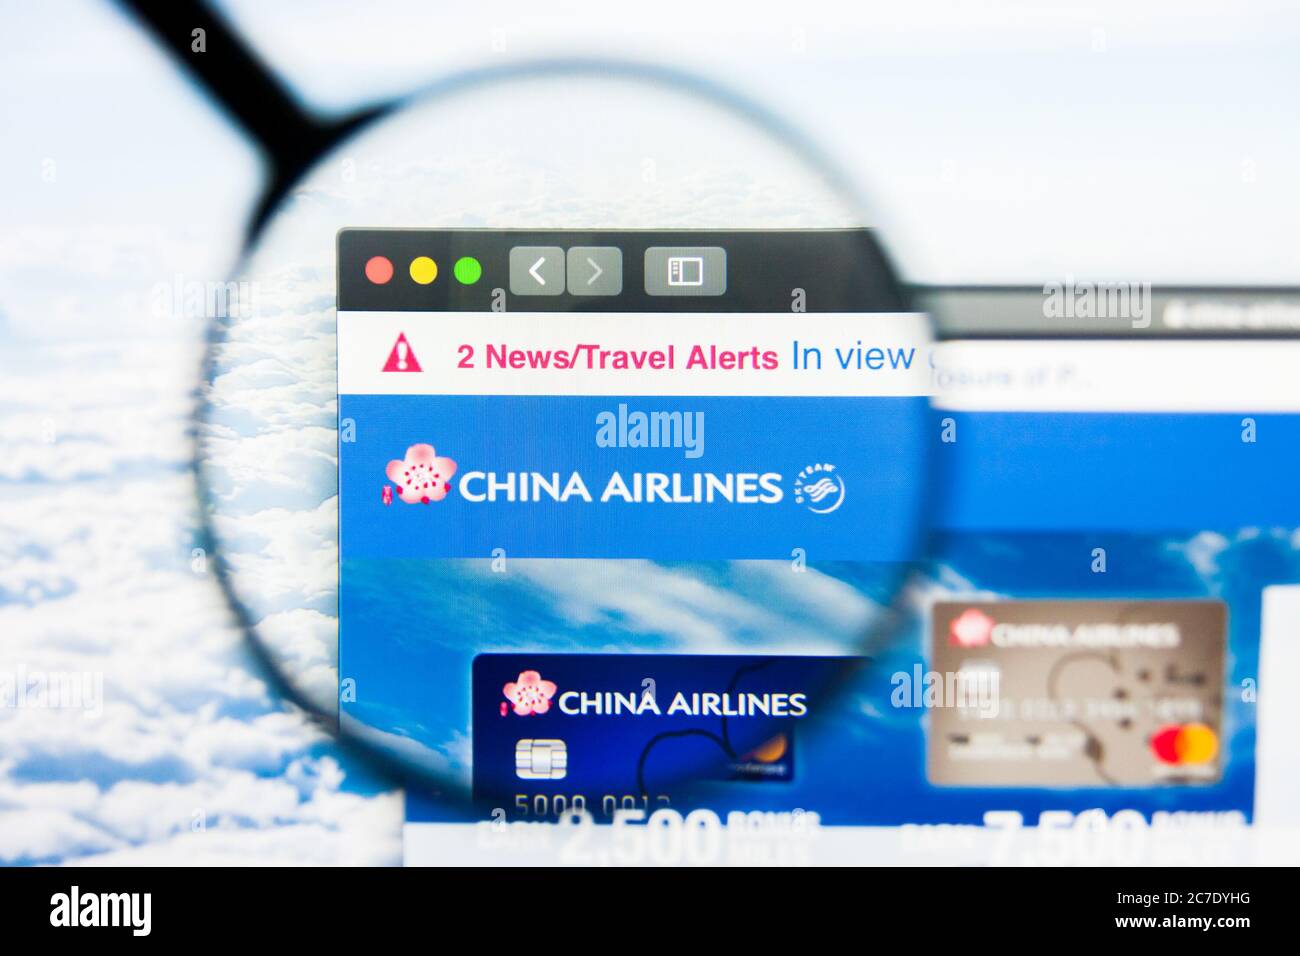 Los Angeles, Californie, États-Unis - 21 mars 2019 : éditorial illustratif de la page d'accueil du site Web de China Airlines. Logo China Airlines visible sur l'écran Banque D'Images